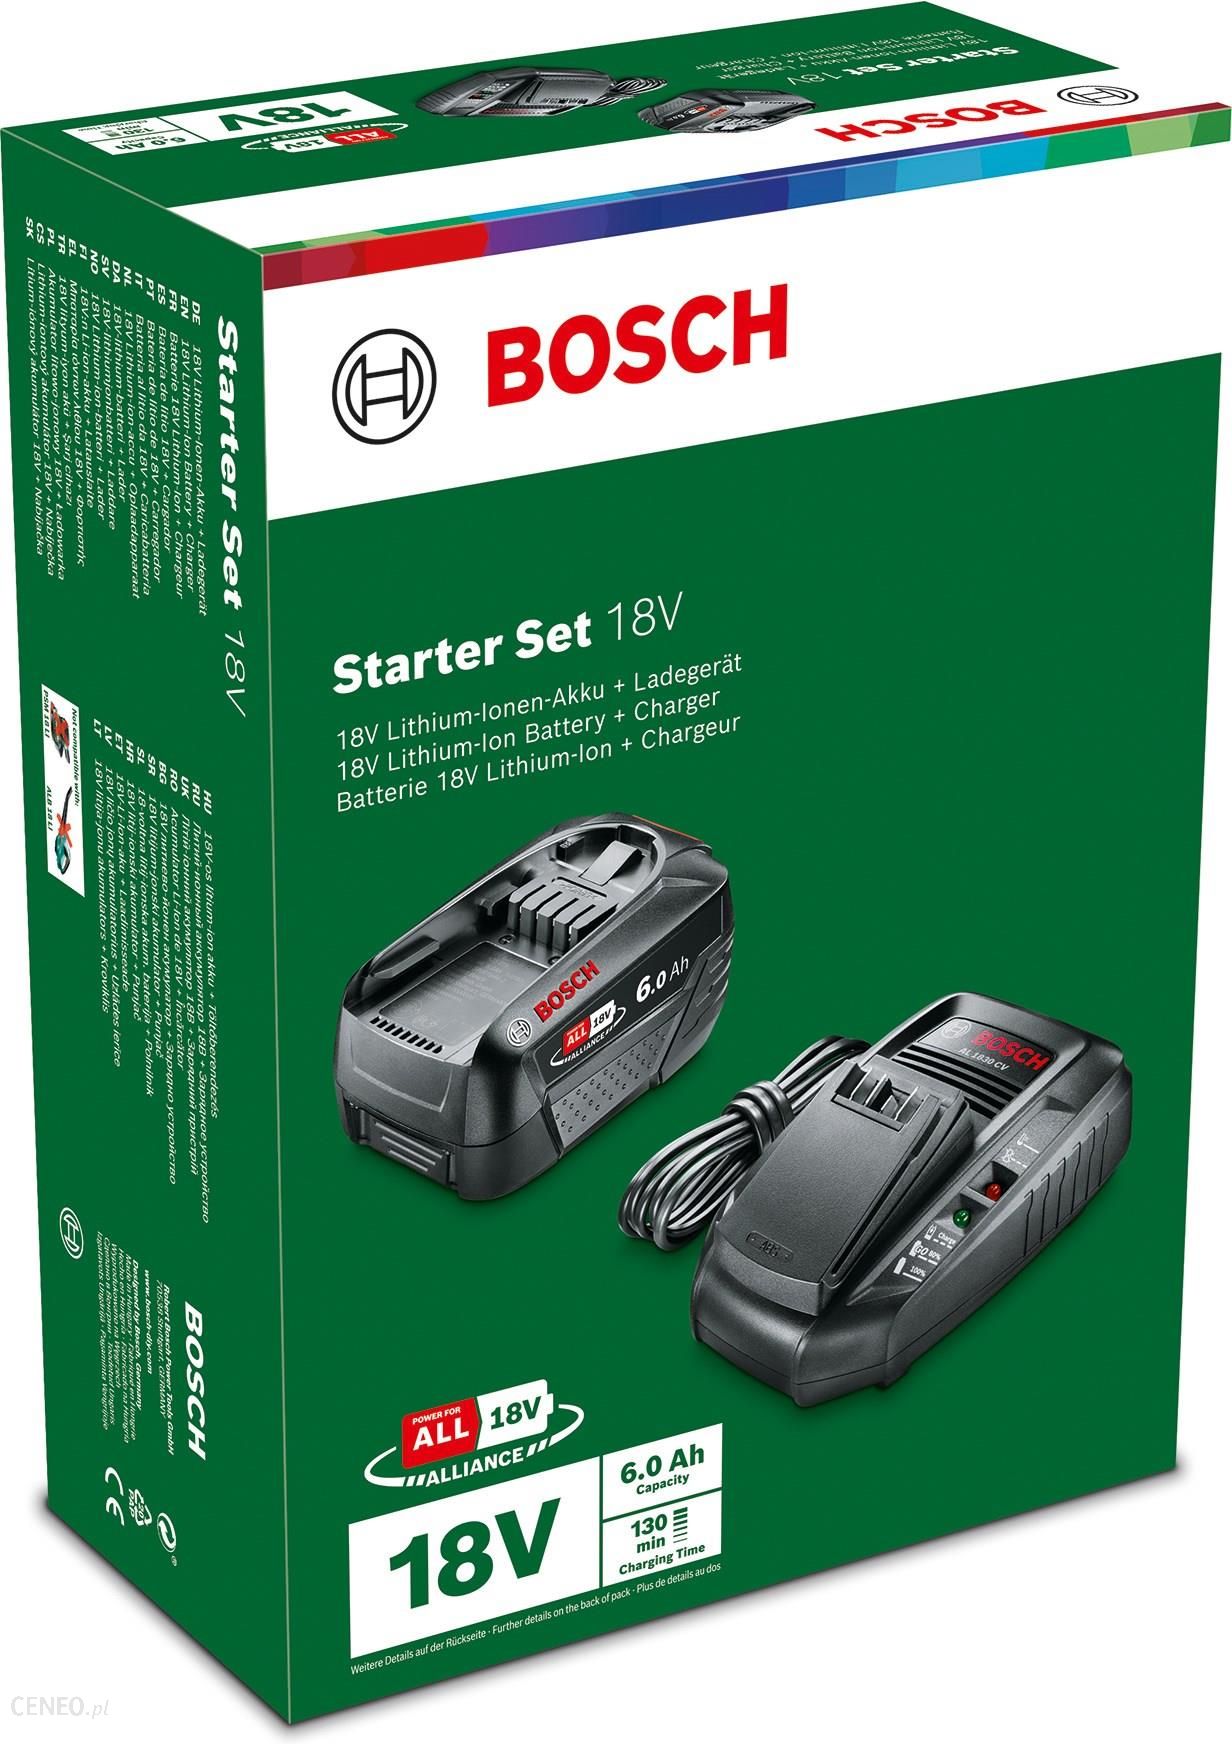 Bosch Starter Set 18V (6,0Ah + AL 1830 CV) 1600A00ZR8 - Opinie i ceny na